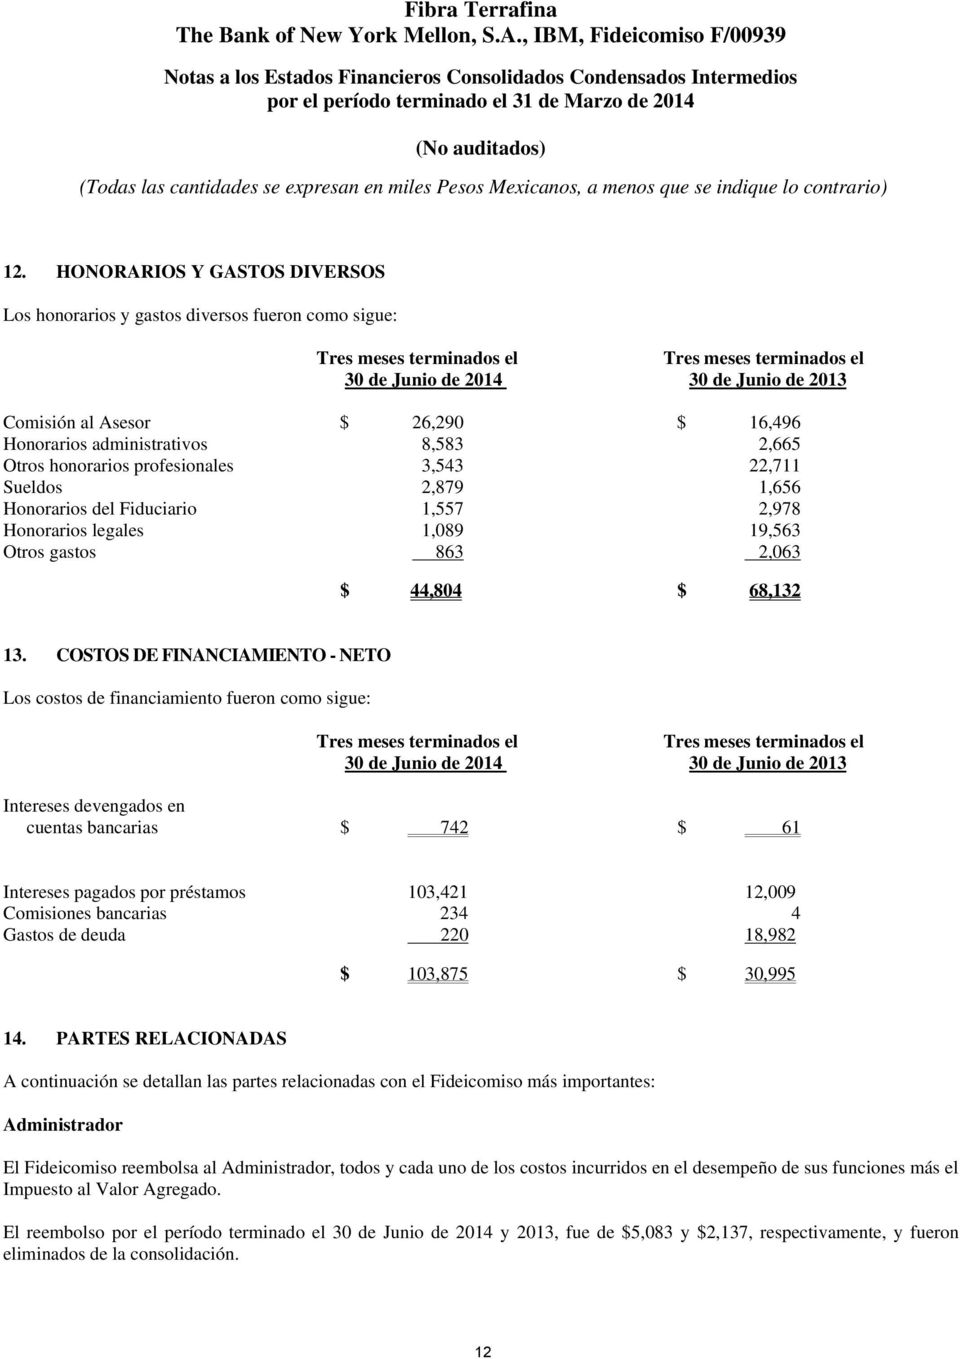 COSTOS DE FINANCIAMIENTO - NETO Los costos de financiamiento fueron como sigue: 30 de Junio de 2014 30 de Junio de 2013 Intereses devengados en cuentas bancarias $ 742 $ 61 Intereses pagados por